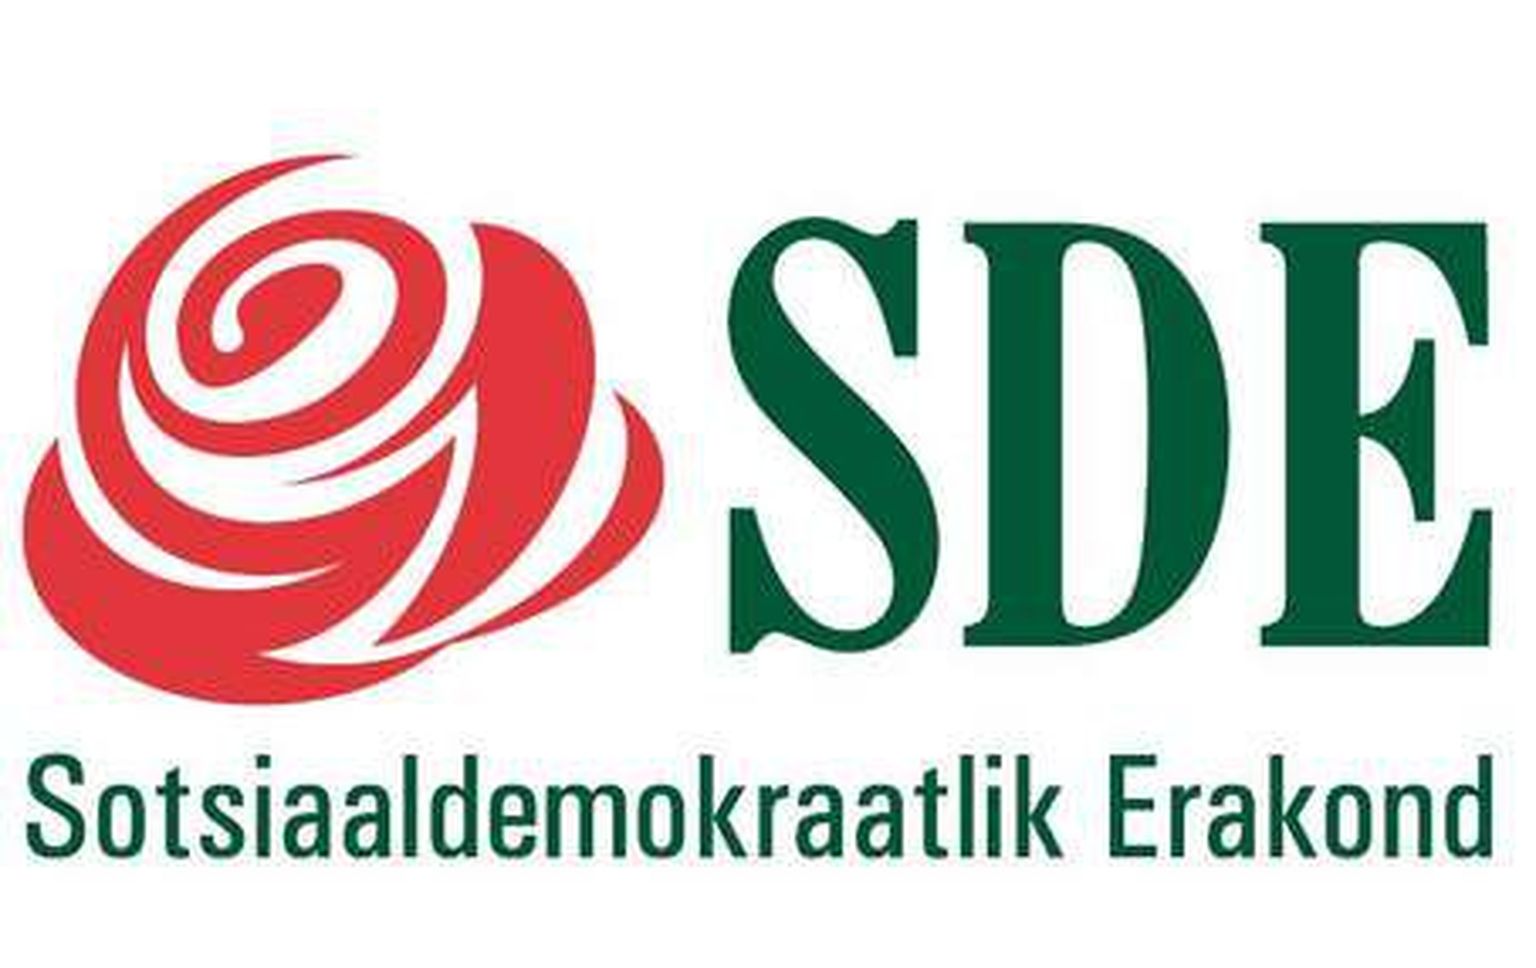 Eesti Sotsiaaldemokraatlik Partei